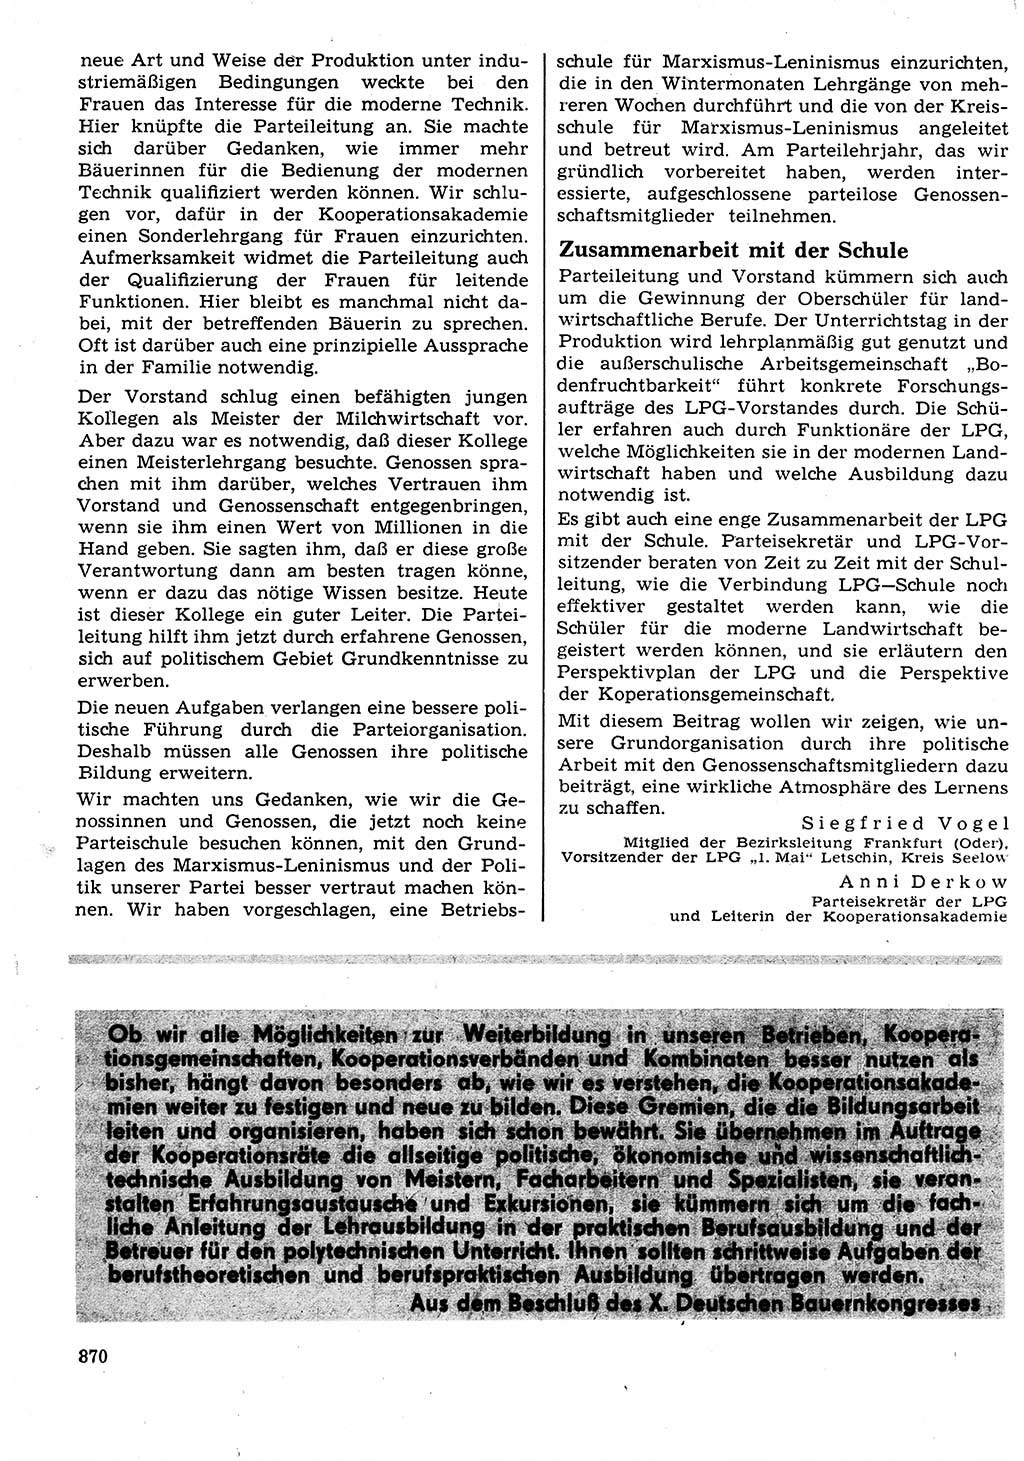 Neuer Weg (NW), Organ des Zentralkomitees (ZK) der SED (Sozialistische Einheitspartei Deutschlands) für Fragen des Parteilebens, 23. Jahrgang [Deutsche Demokratische Republik (DDR)] 1968, Seite 854 (NW ZK SED DDR 1968, S. 854)